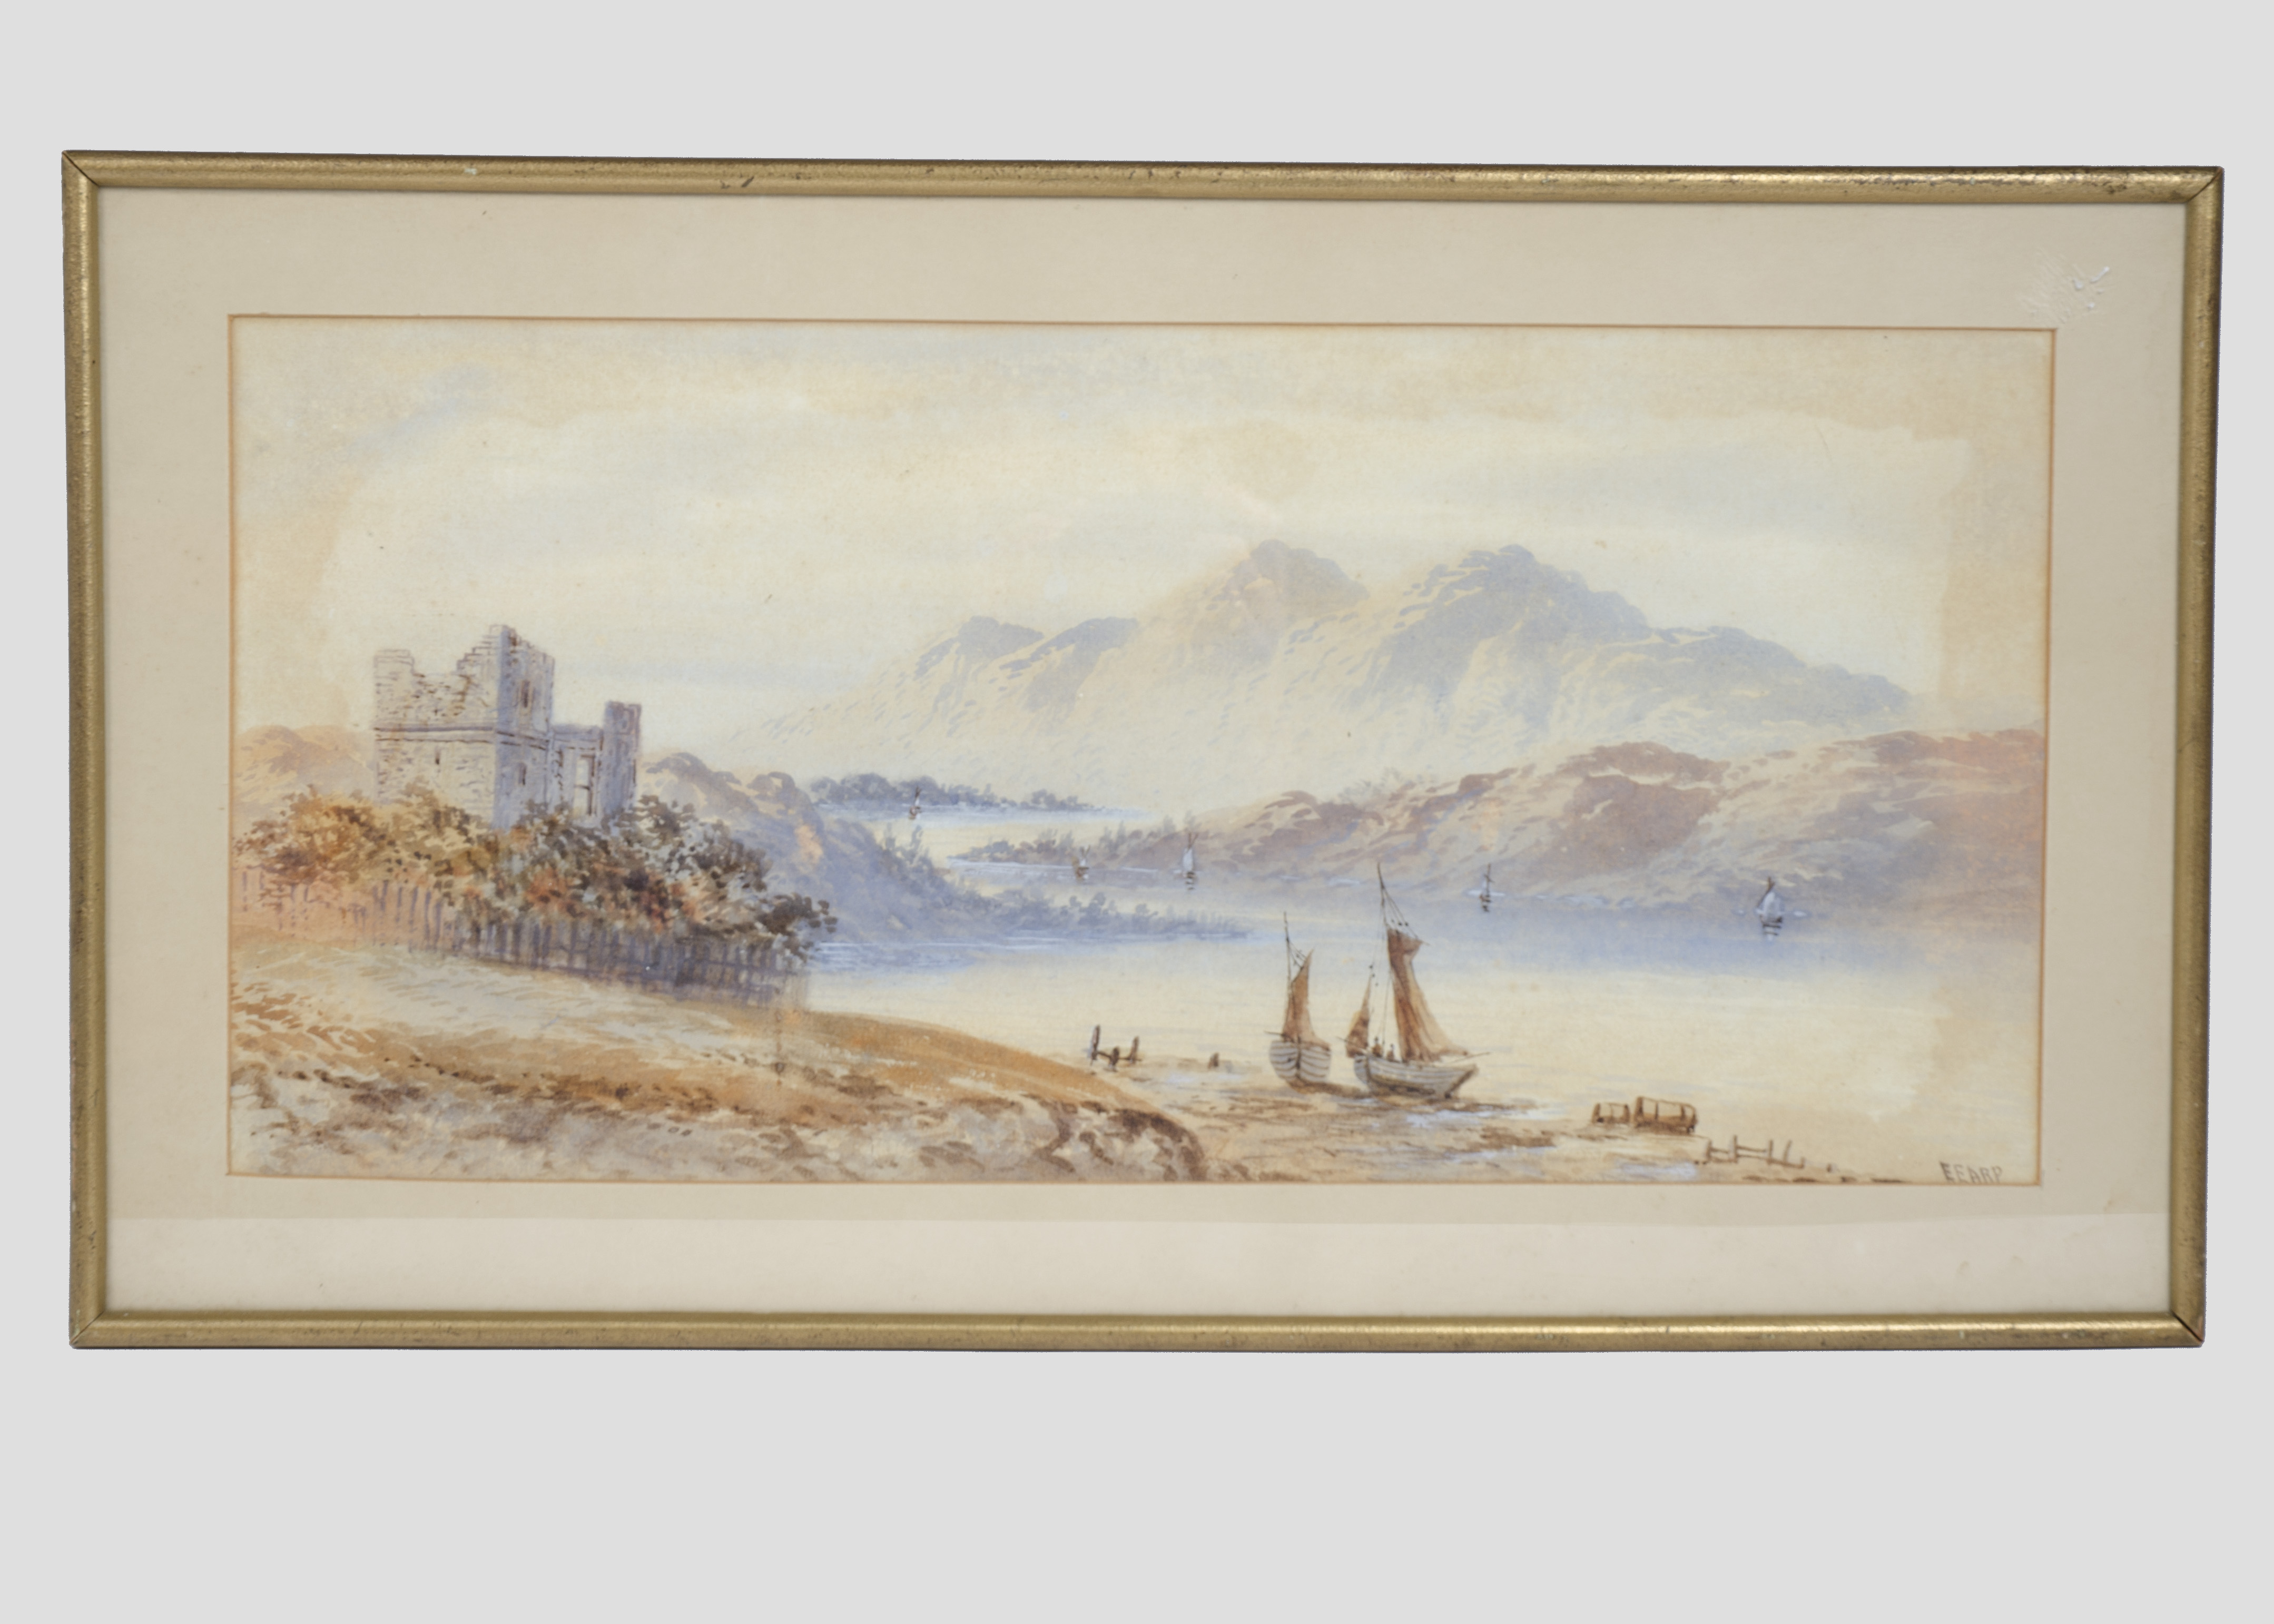 Edwin Earp (1851-1945) watercolour on paper, 'Coastal Landscape', signed 'EEARP' (lower right), 23.5